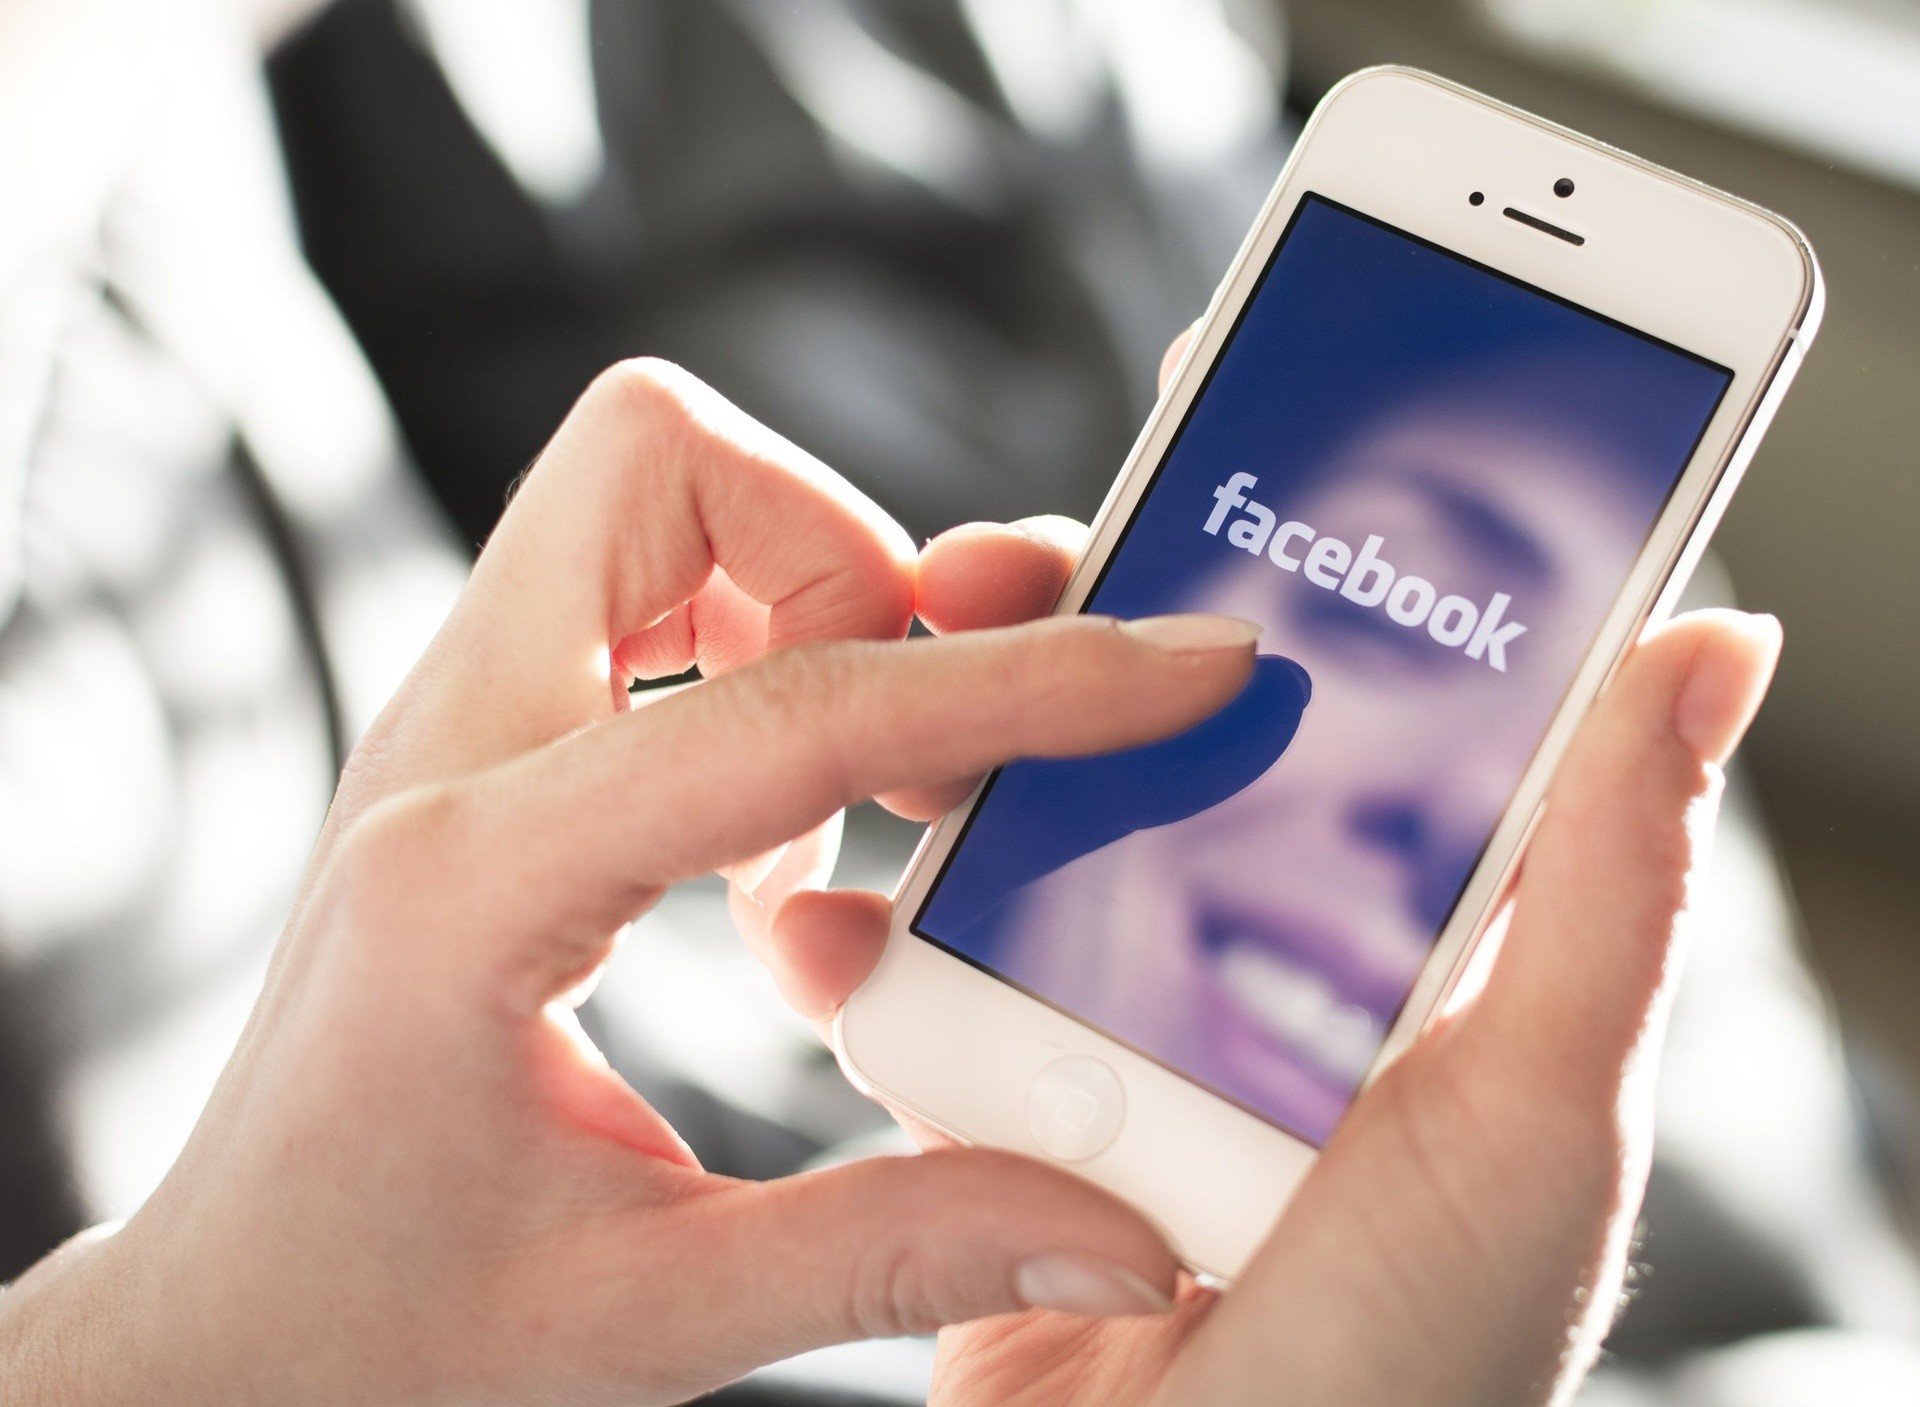 Znajomy ostrzega cię na Facebooku, że ktoś przerobił Twoje zdjęcia? Nie daj  się nabrać, to może być scam! | Express Bydgoski